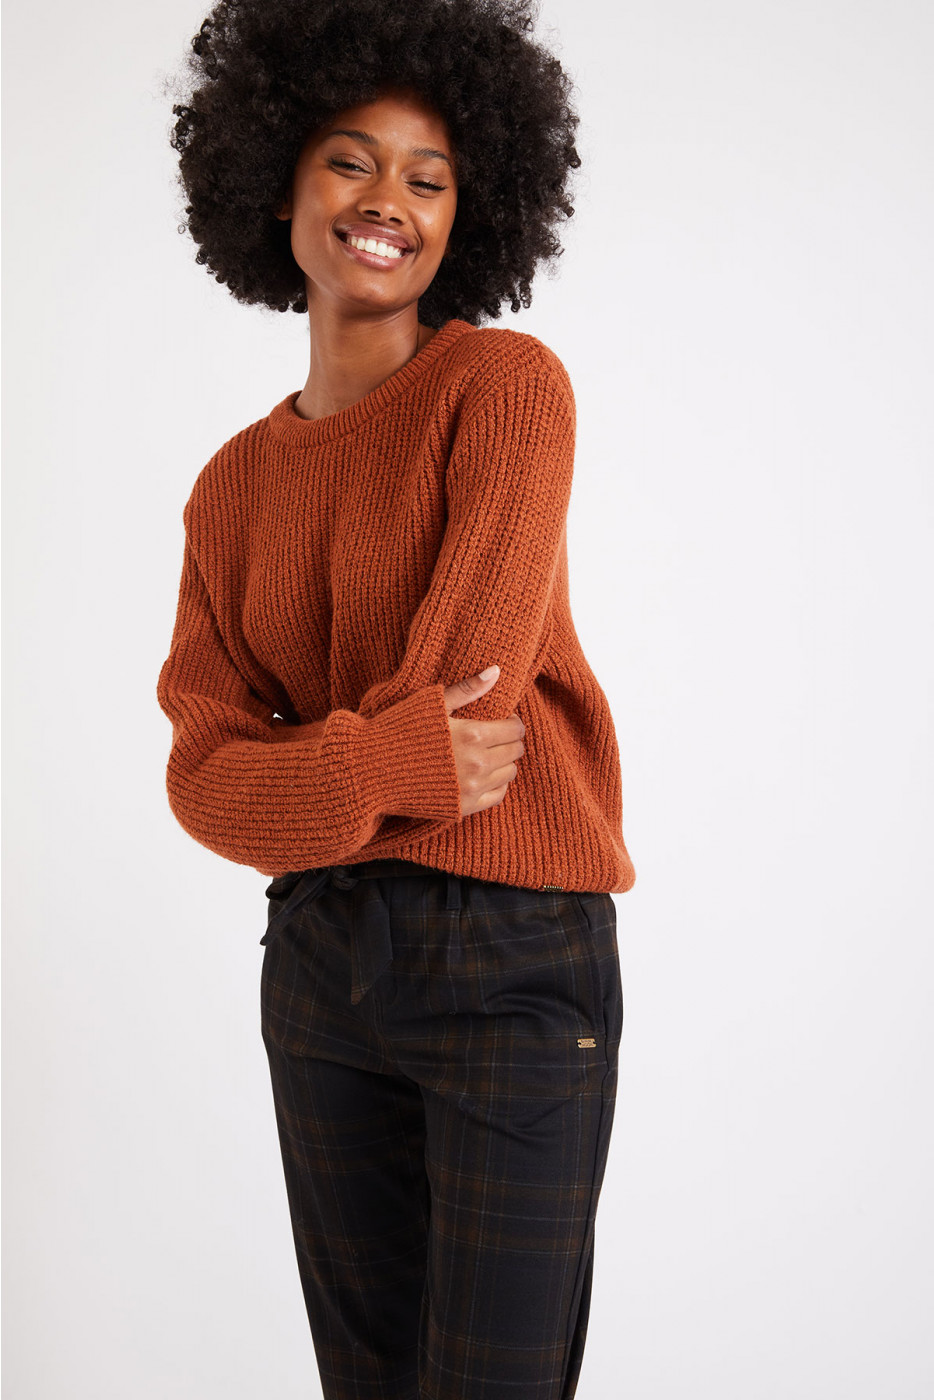 Nairi Simeon women's sweater